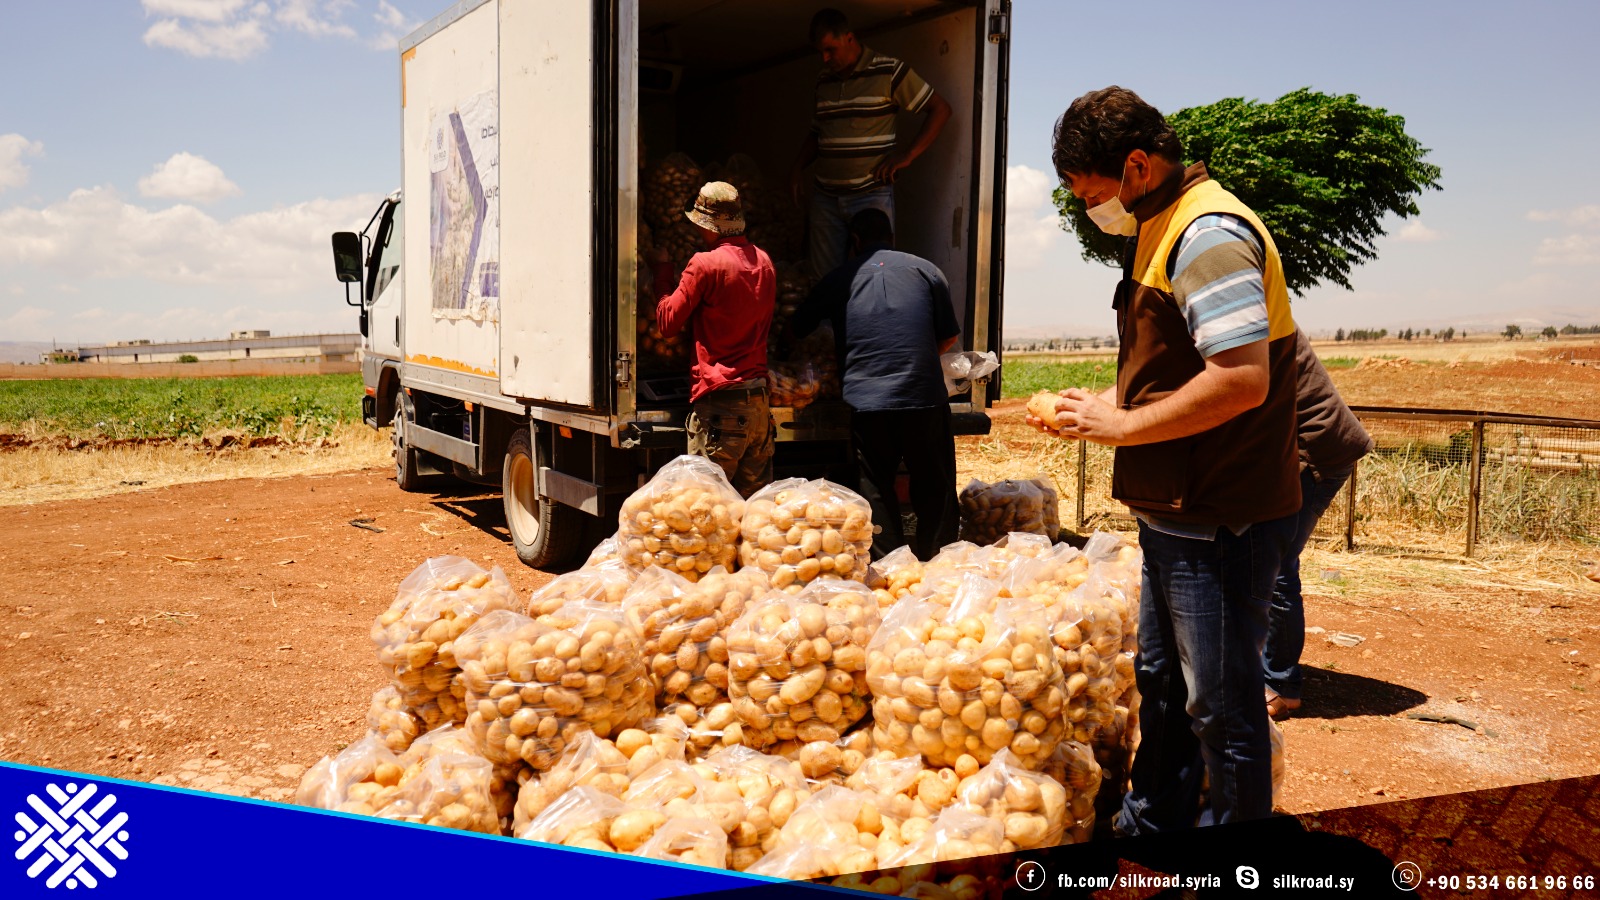 استكمال جمع محصول البطاطا من من أراضي المزارعين وتوزيعها على العائلات المستفيدة وذلك ضمن مشروع #منظمة_طريق_الحرير في #دعم_مزارعي_البطاطا_و_توفير_الخضروات_الطازجة في ريفي إدلب و حلب